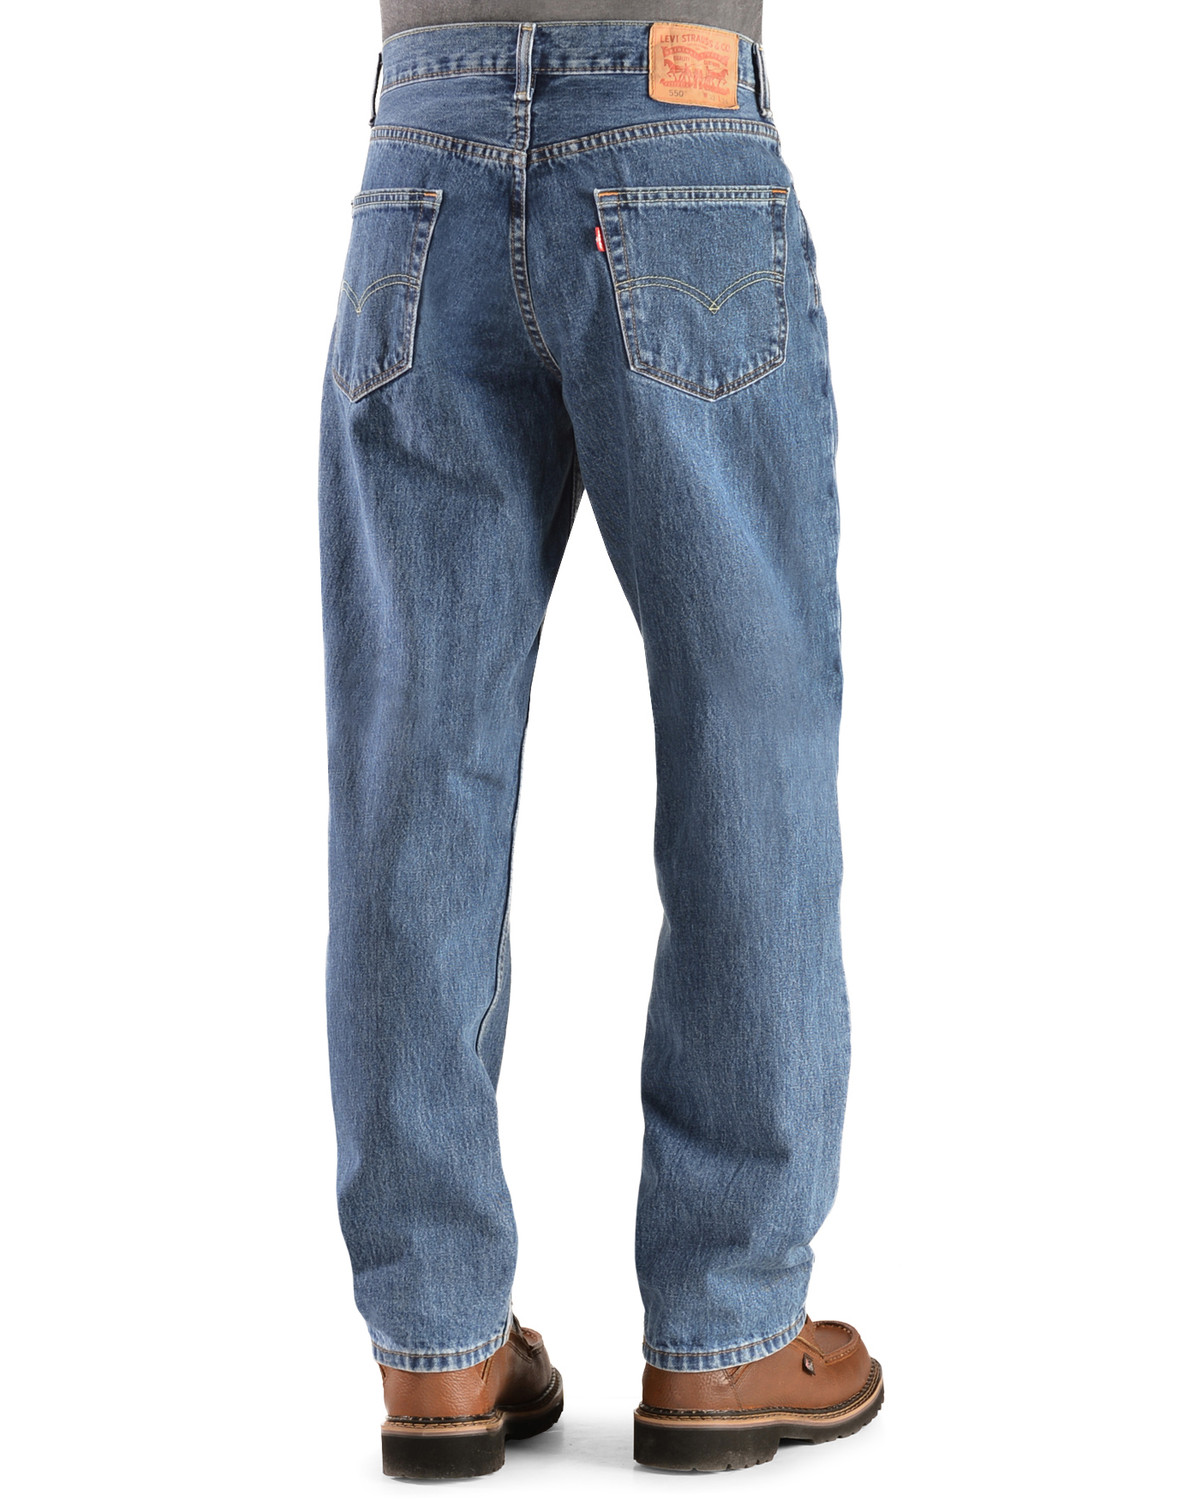 levis 550 mens jeans